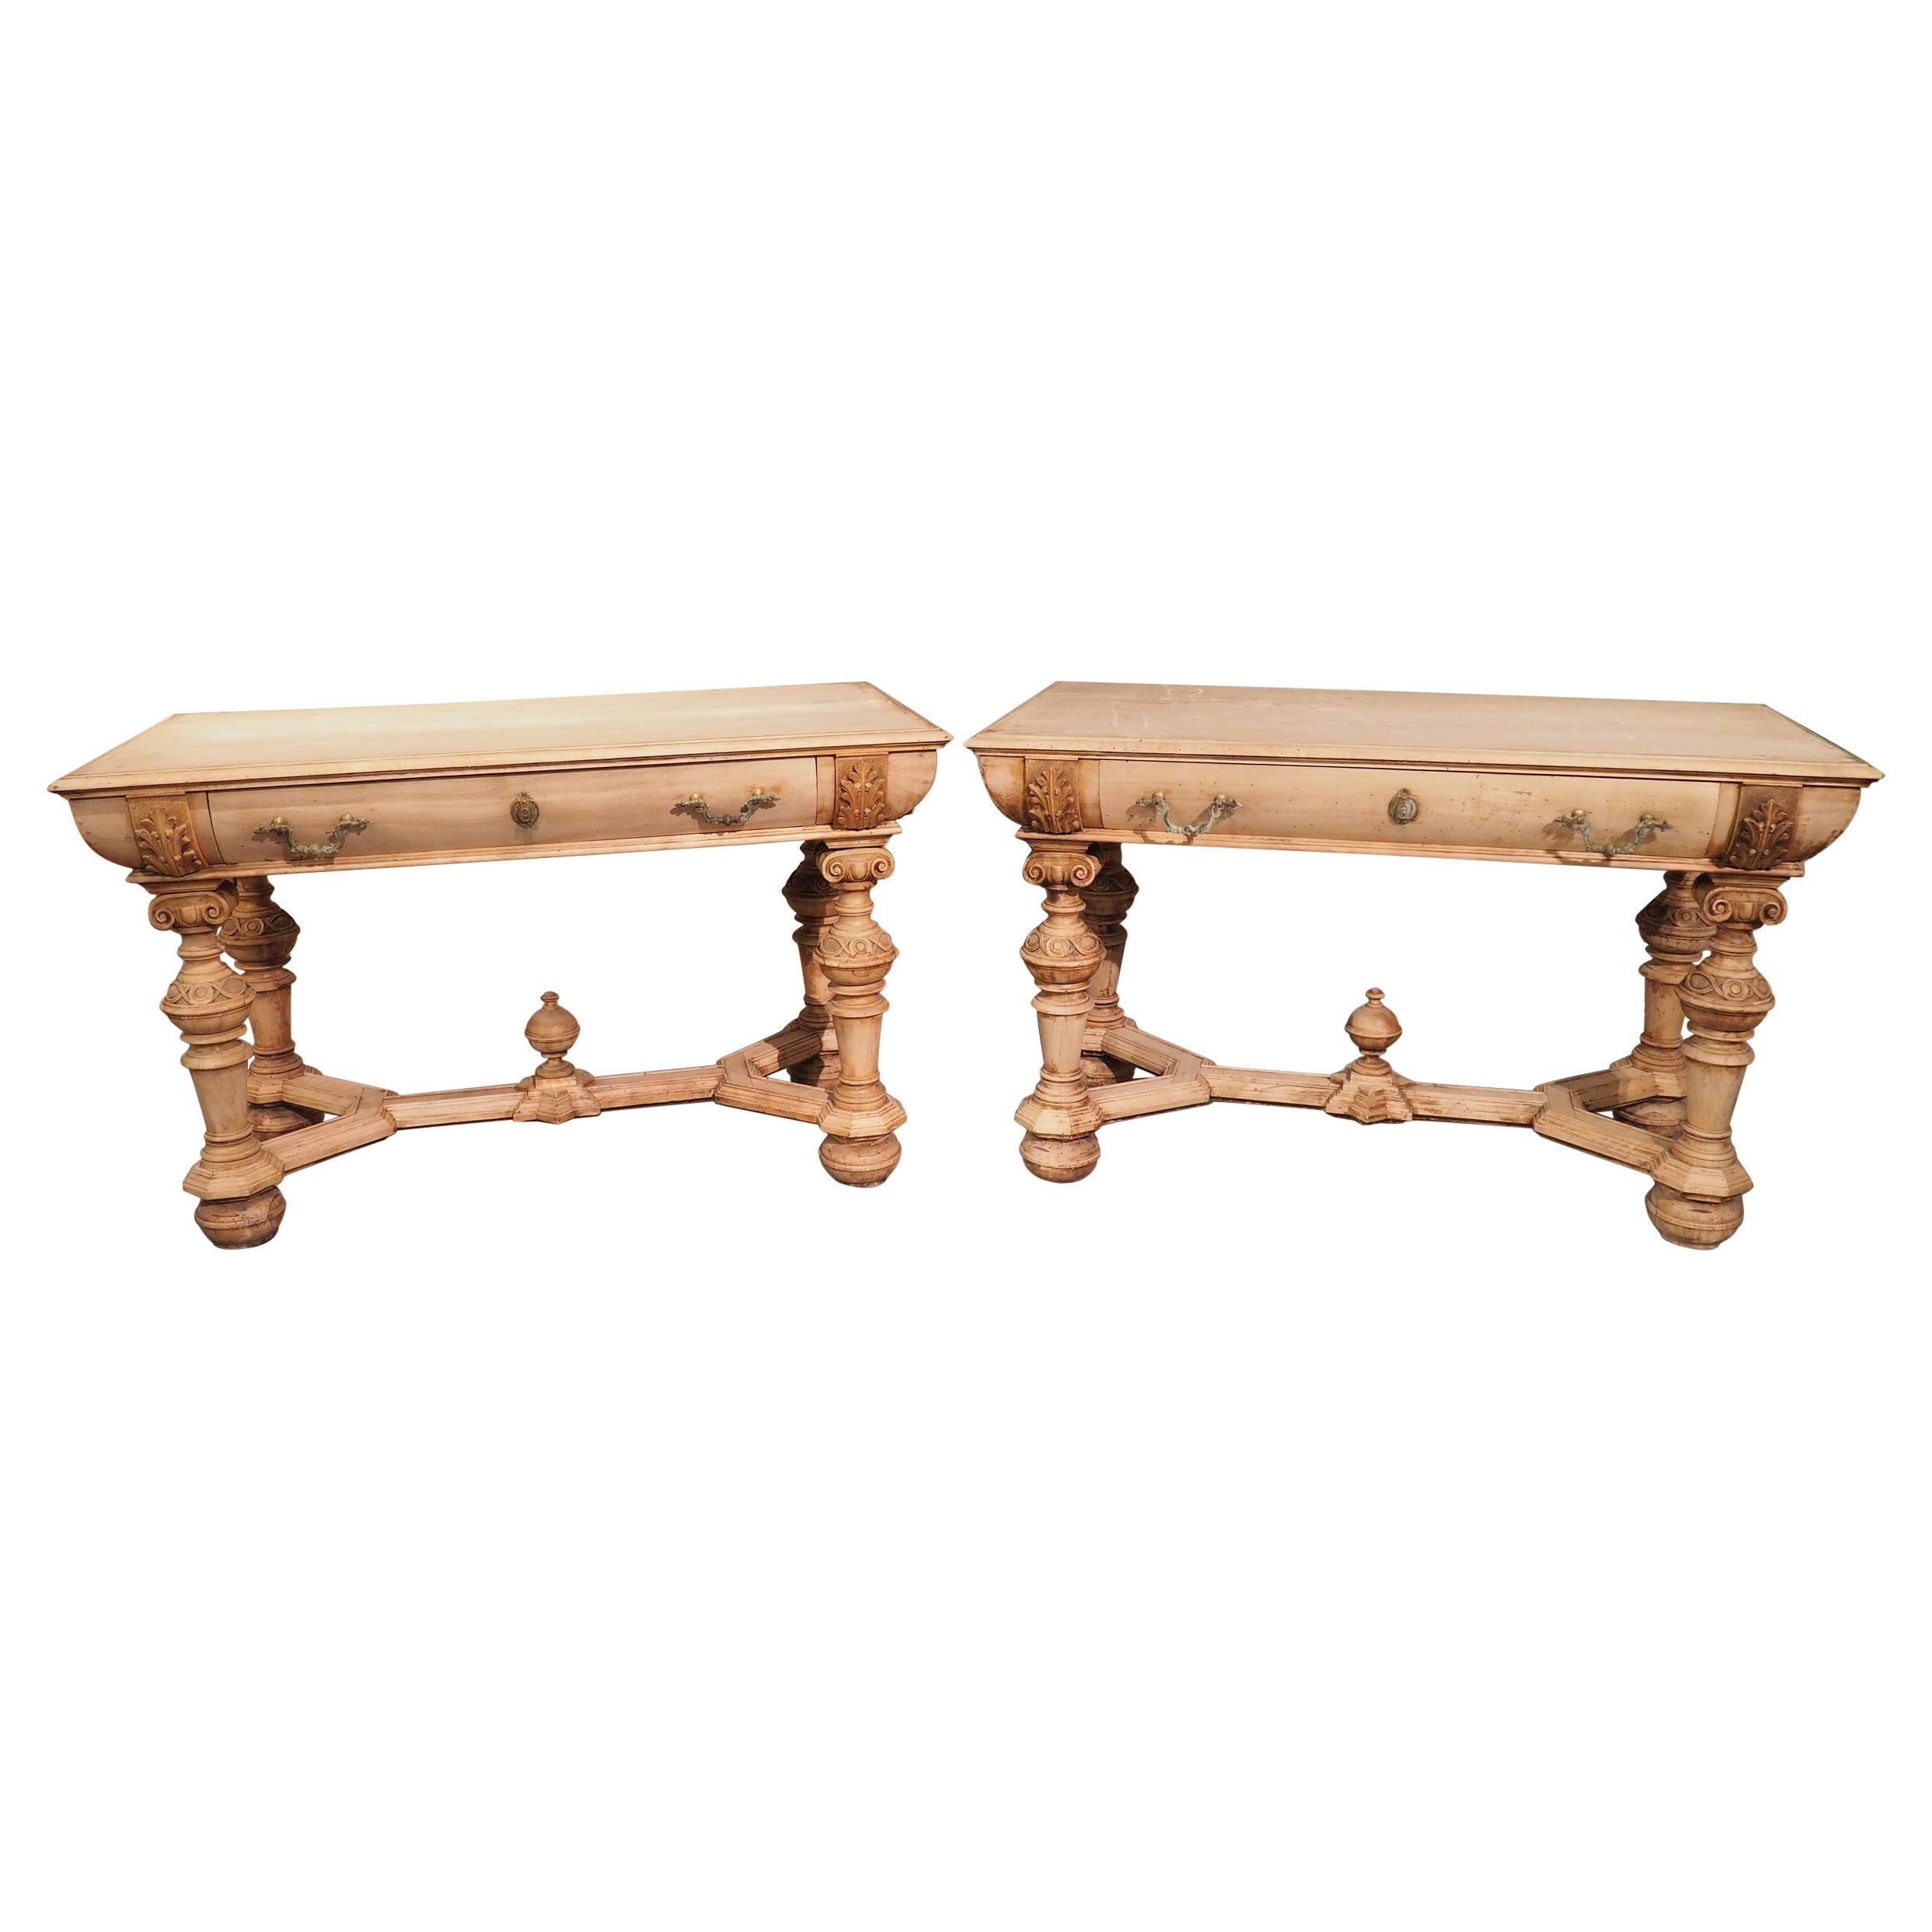 Paire de tables anciennes blanchies de style Renaissance hollandaise, 19e siècle